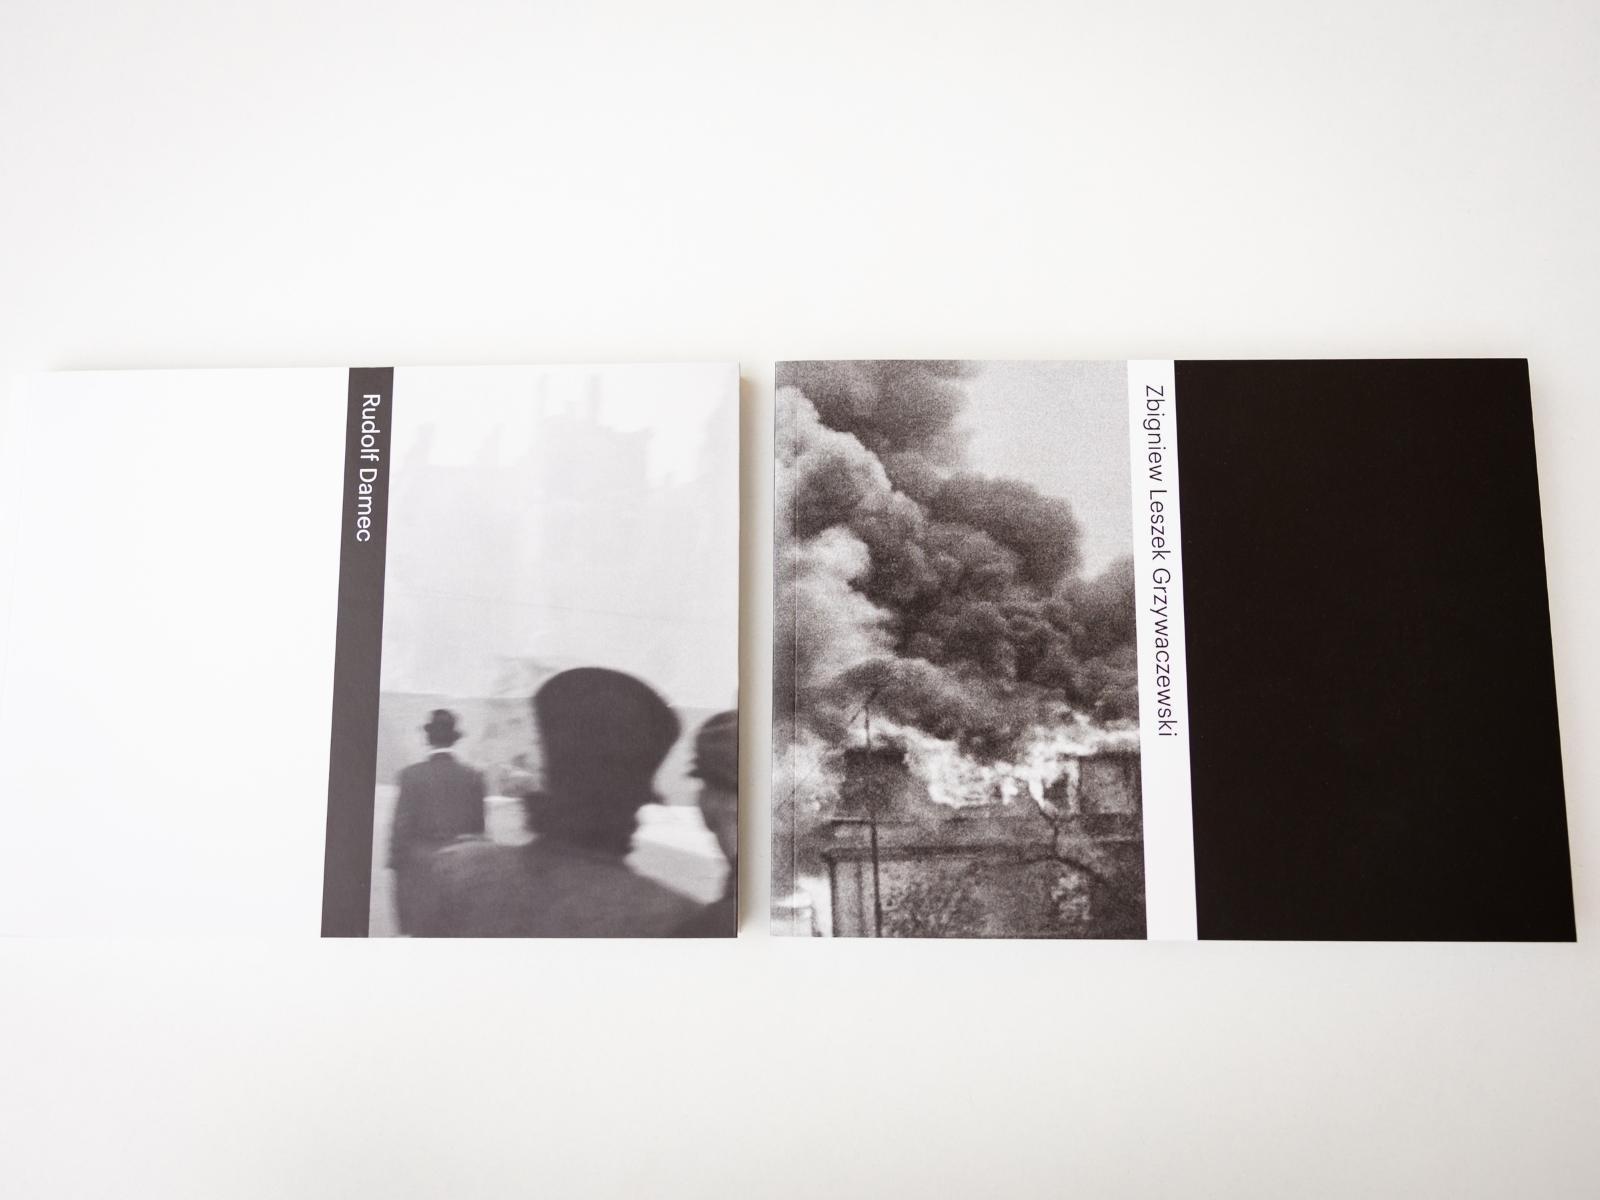 Albumy zdjęć Dameca i Grzywaczewskiego leżą obok siebie. Na okładkach wybrane fotografie.